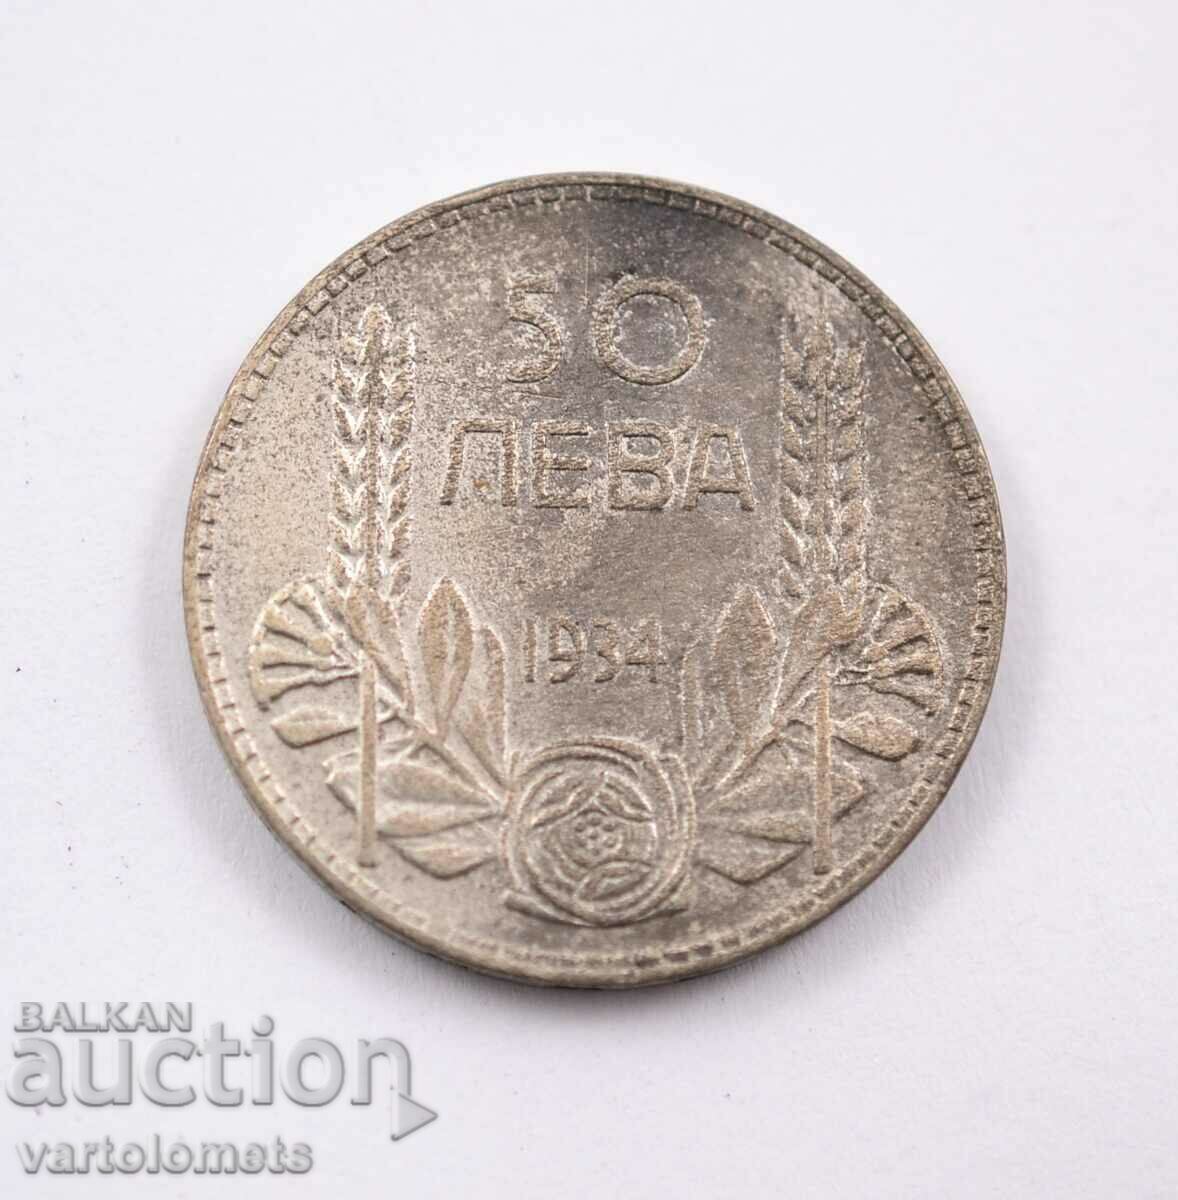 50 Leva 1934 - Bulgaria Tsar Boris III, silver.